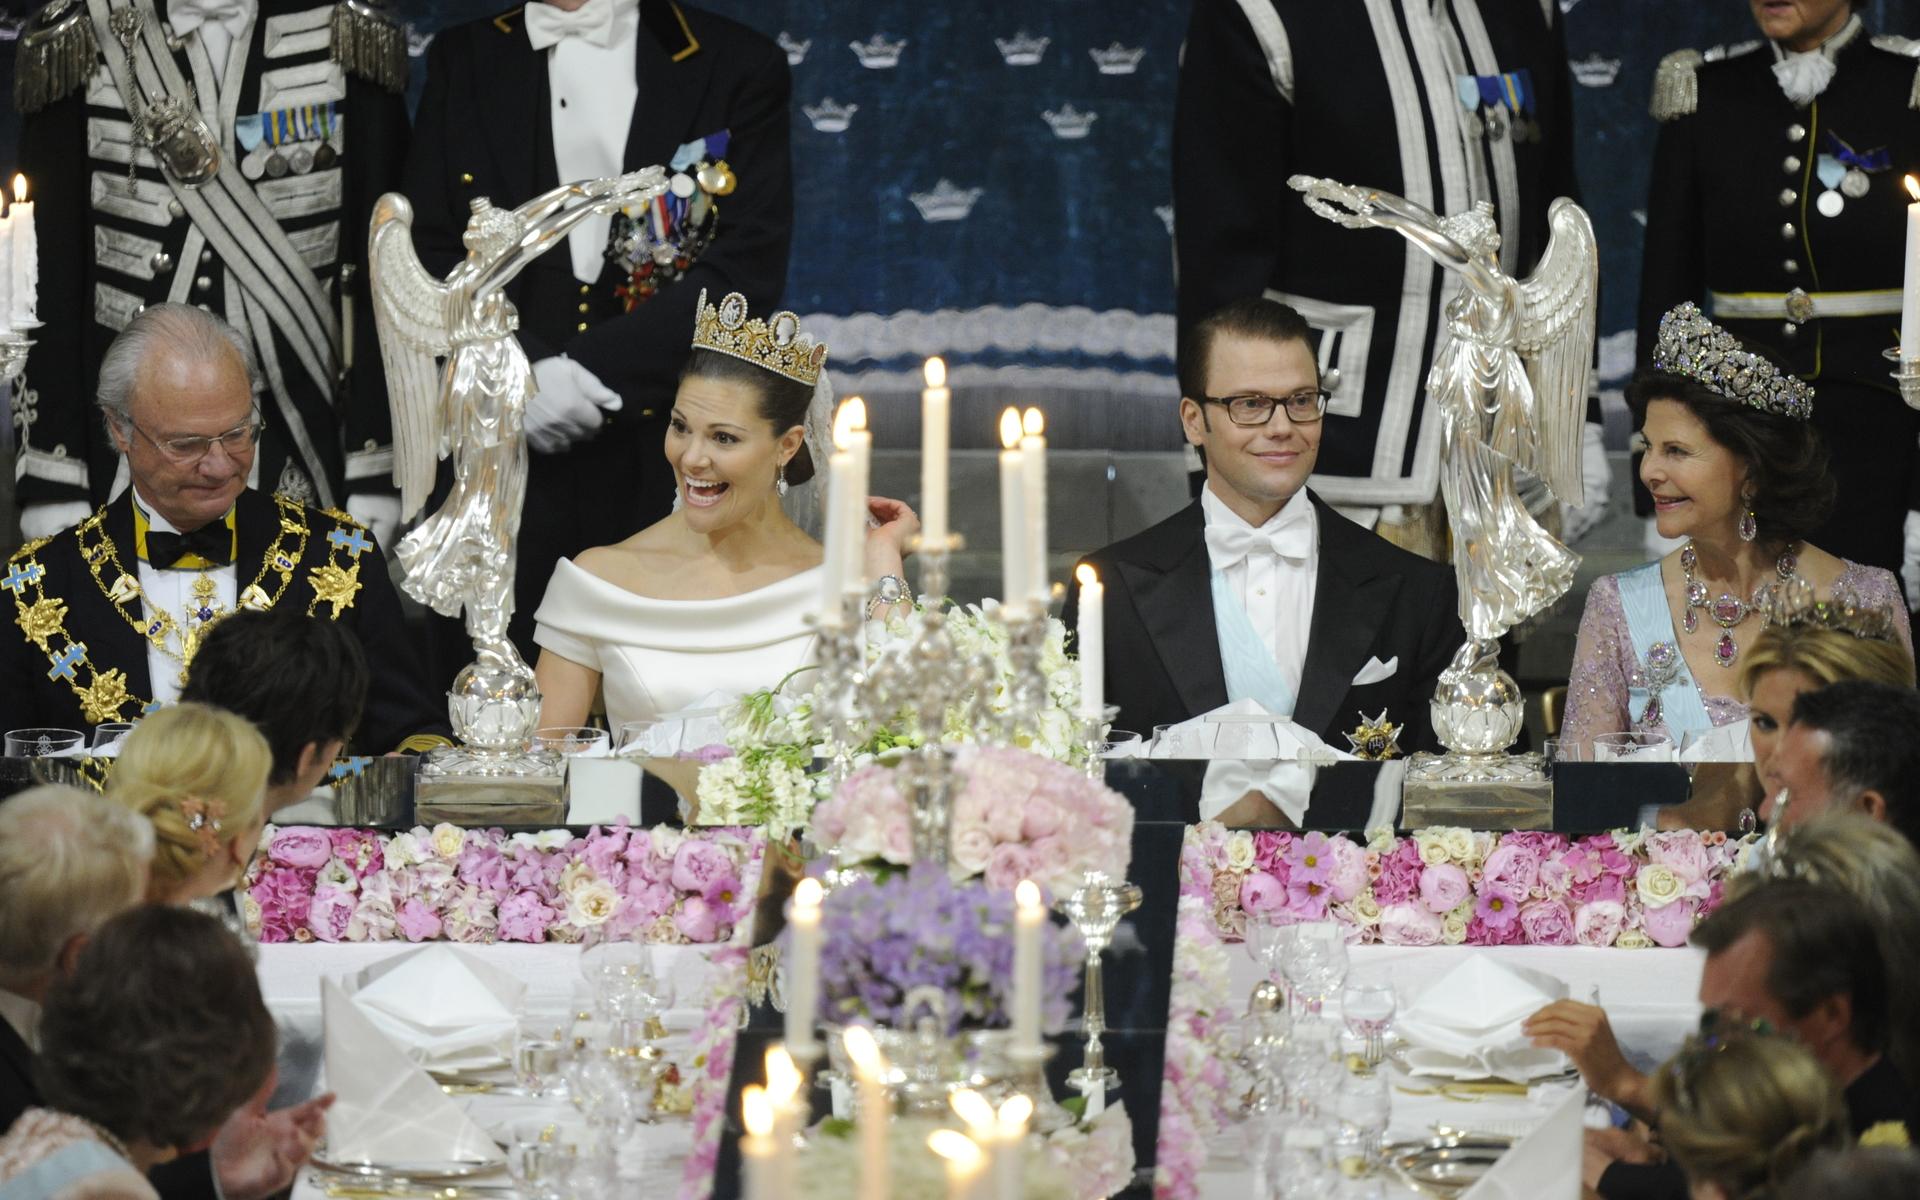 Den 19 juni 2010 var det dags för kungligt bröllop mellan kronprinsessan Victoria och Daniel Westling. Här är brudparet under bröllopsmiddagen i Rikssalen på Slottet i Stockholm efter vigseln, de är flankerade av kung Carl XVI Gustaf och drottning Silvia. Arkivbild.